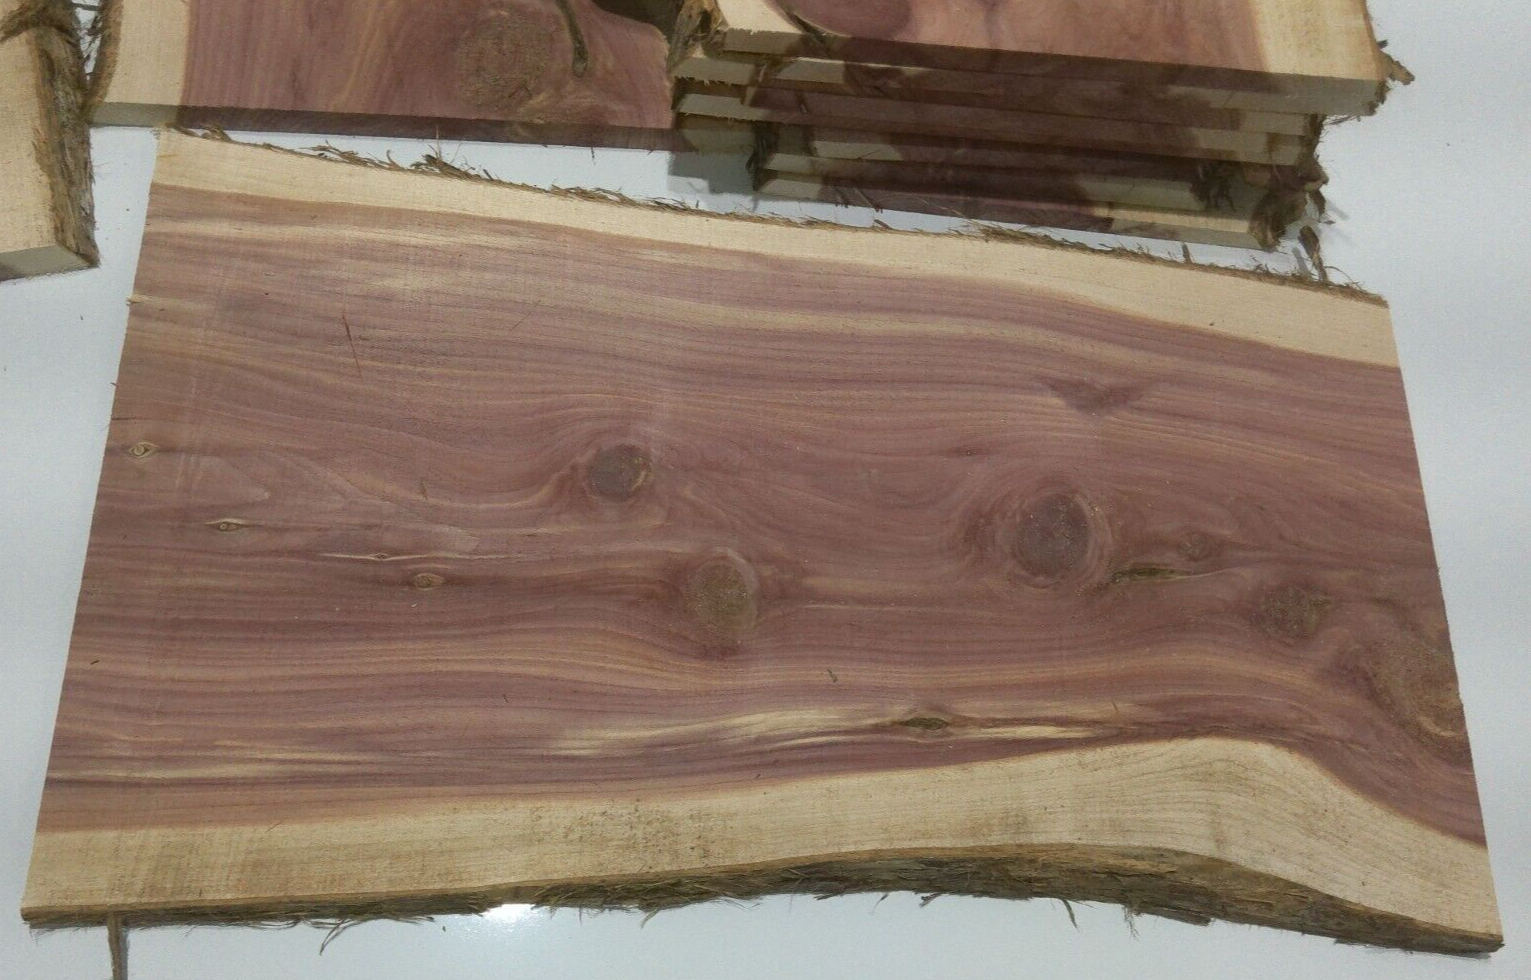 1 Milled Kiln Dried Eastern Red Cedar Lumber SLAB 24" X 8-12" X 1/2" RARE Our Wood Shop - фотография #3